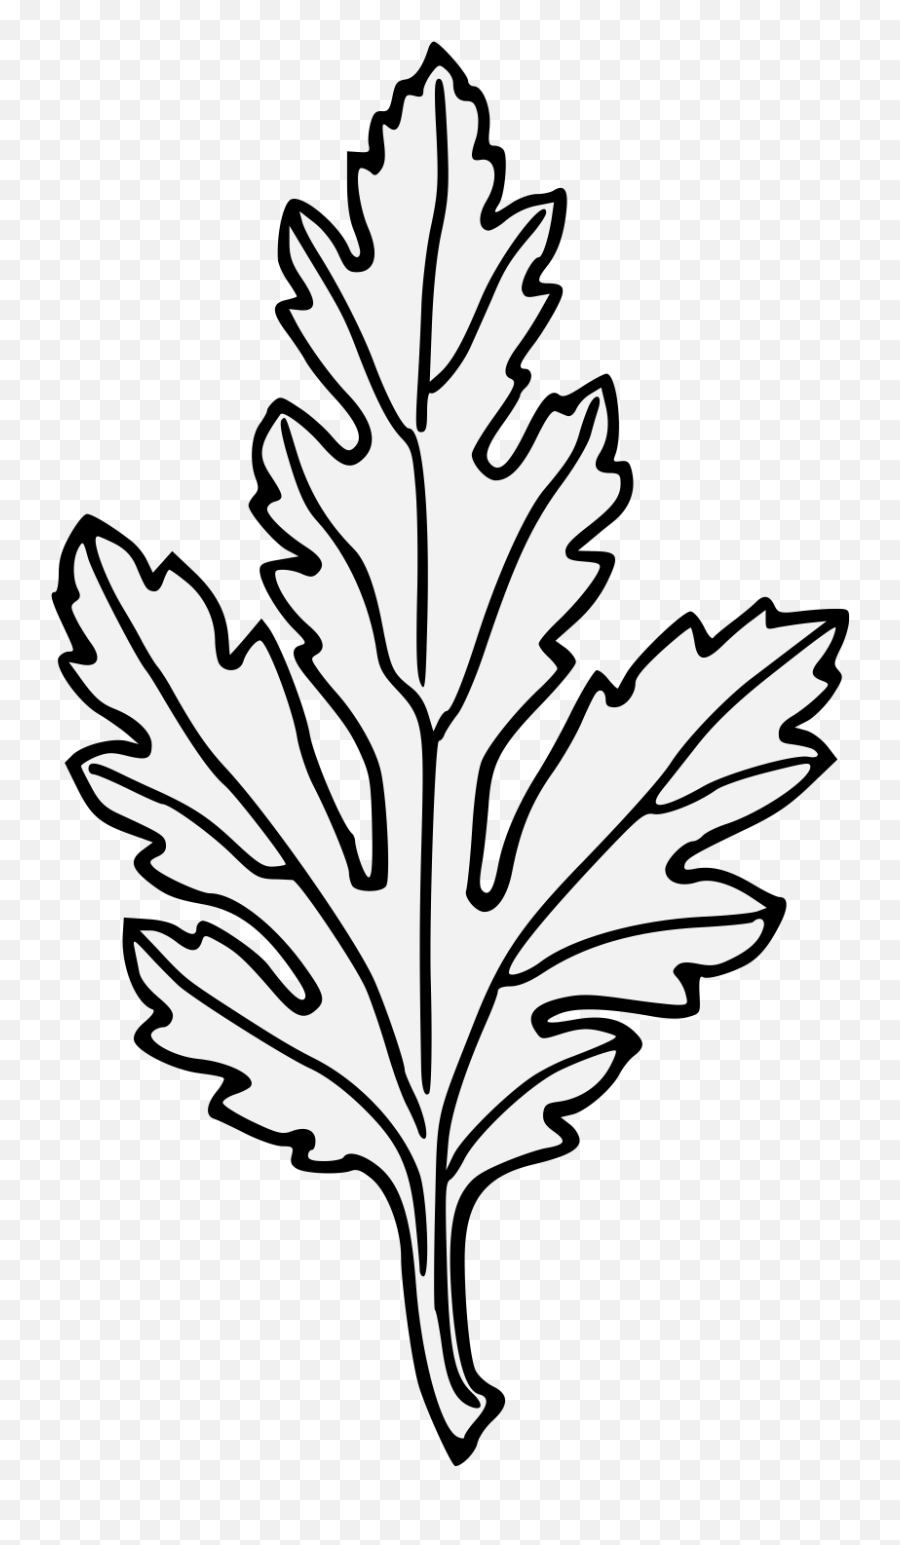 Chrysanthemum - Traceable Heraldic Art V Lá Hoa Cúc Png,Chrysanthemum Png